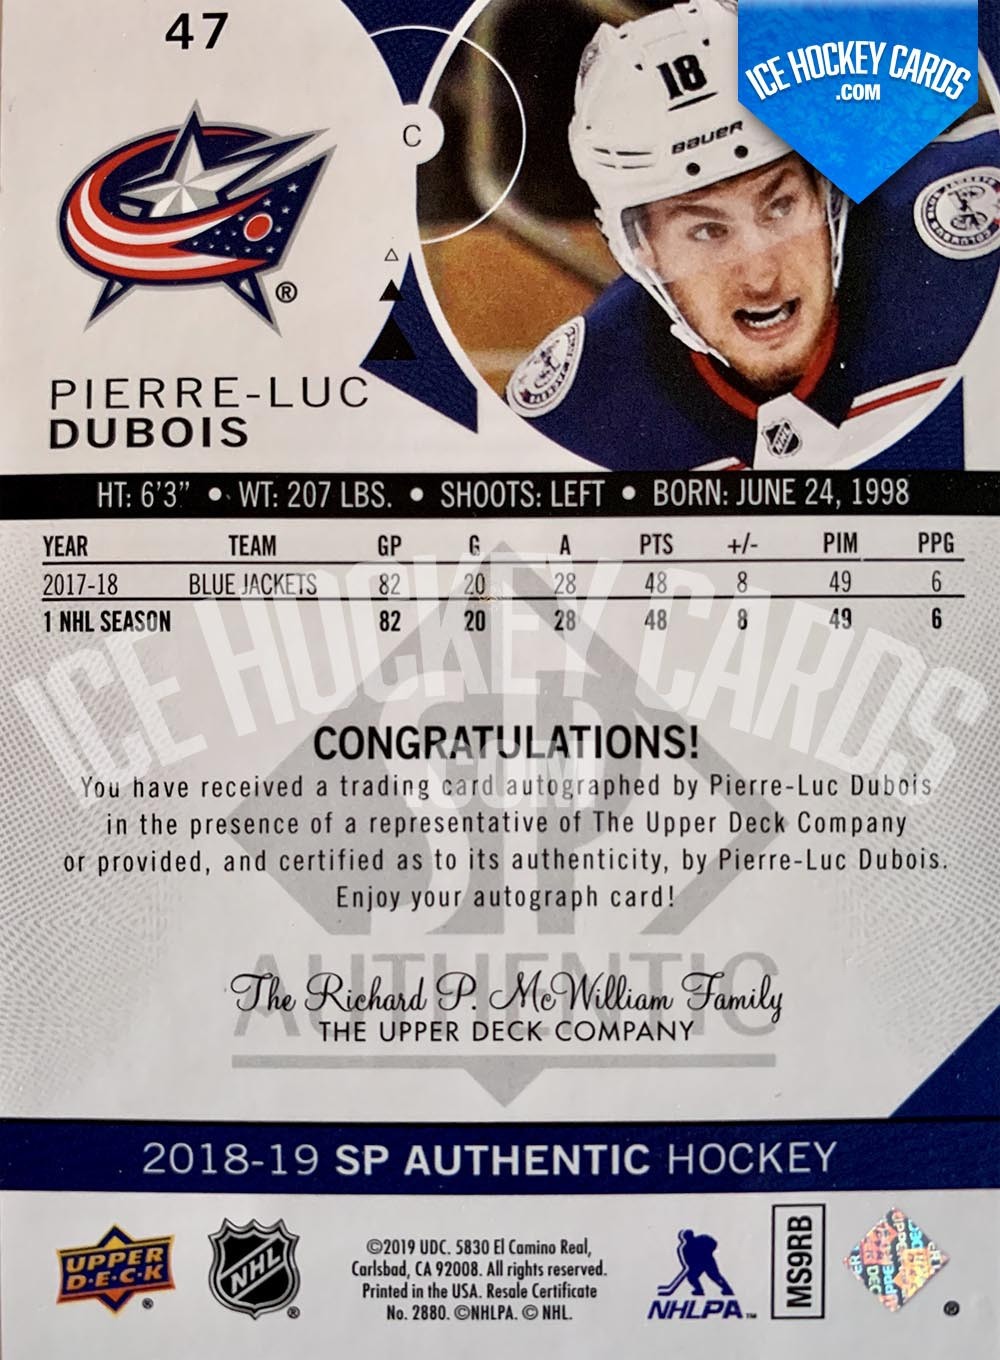 Upper Deck - SP Authentic 2018-19 - Pierre-Luc Dubois Limited Autographed  Card back